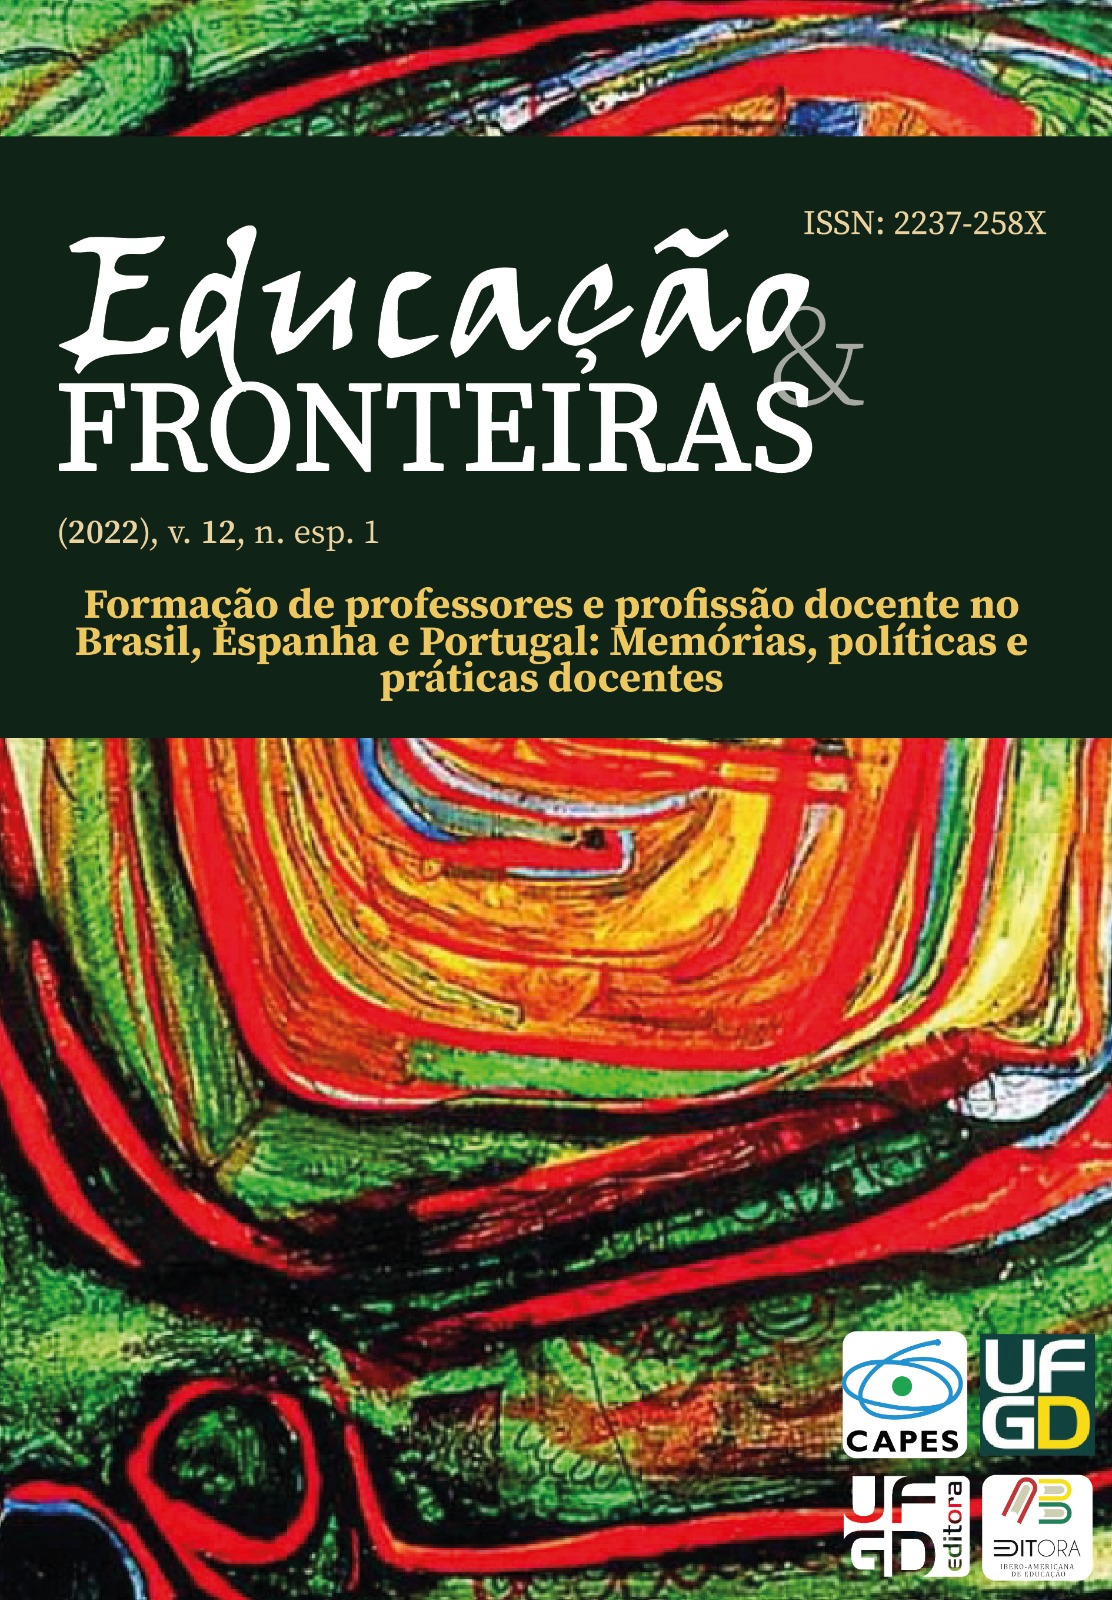 					View (2022), v. 12, n. esp. 1: Formação de professores e profissão docente no Brasil, Espanha e Portugal: Memórias, políticas e práticas docentes
				